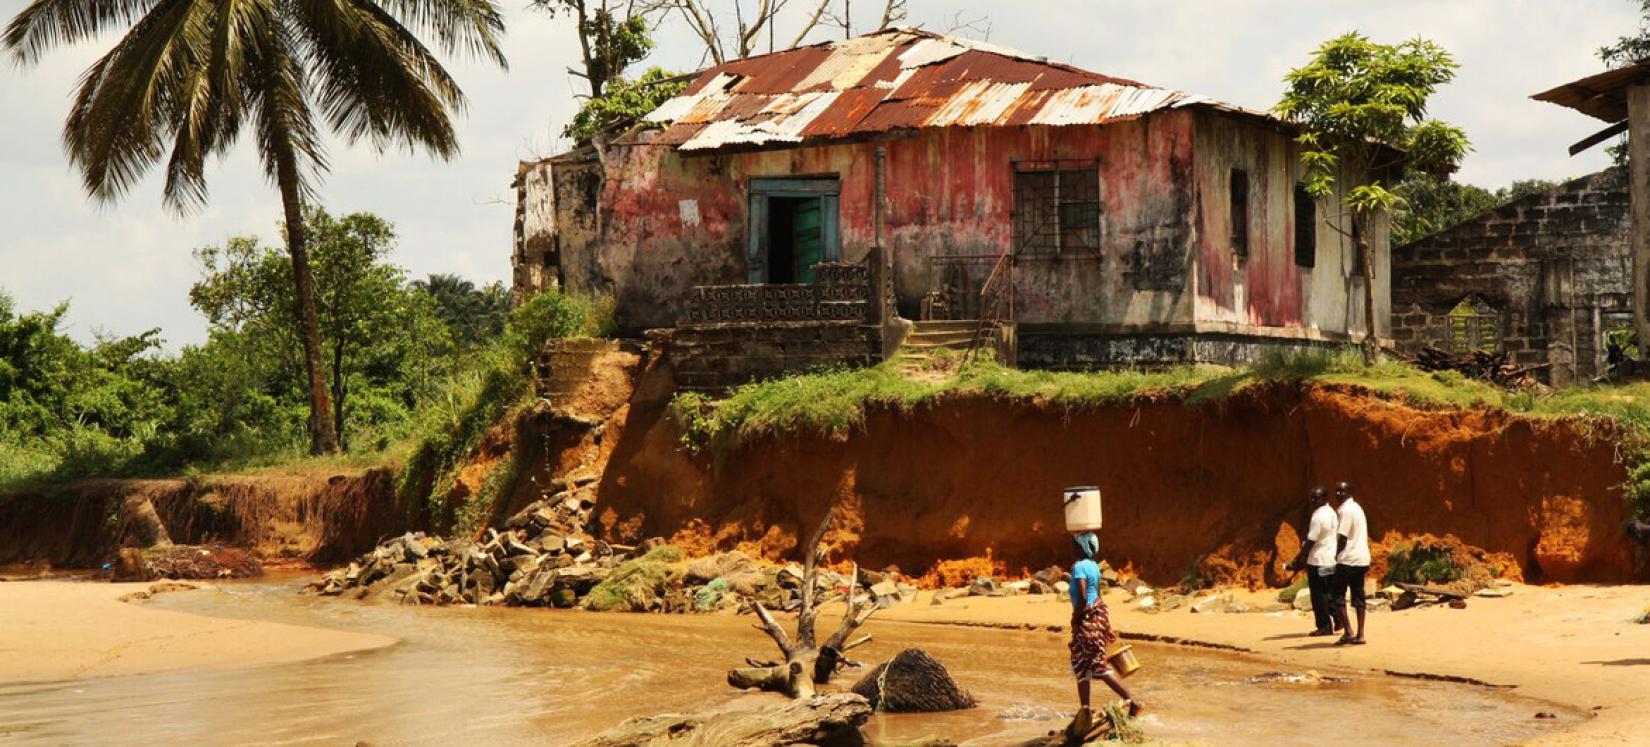 Na Libéria, políticas climáticas estão protegendo as comunidades costeiras vulneráveis.